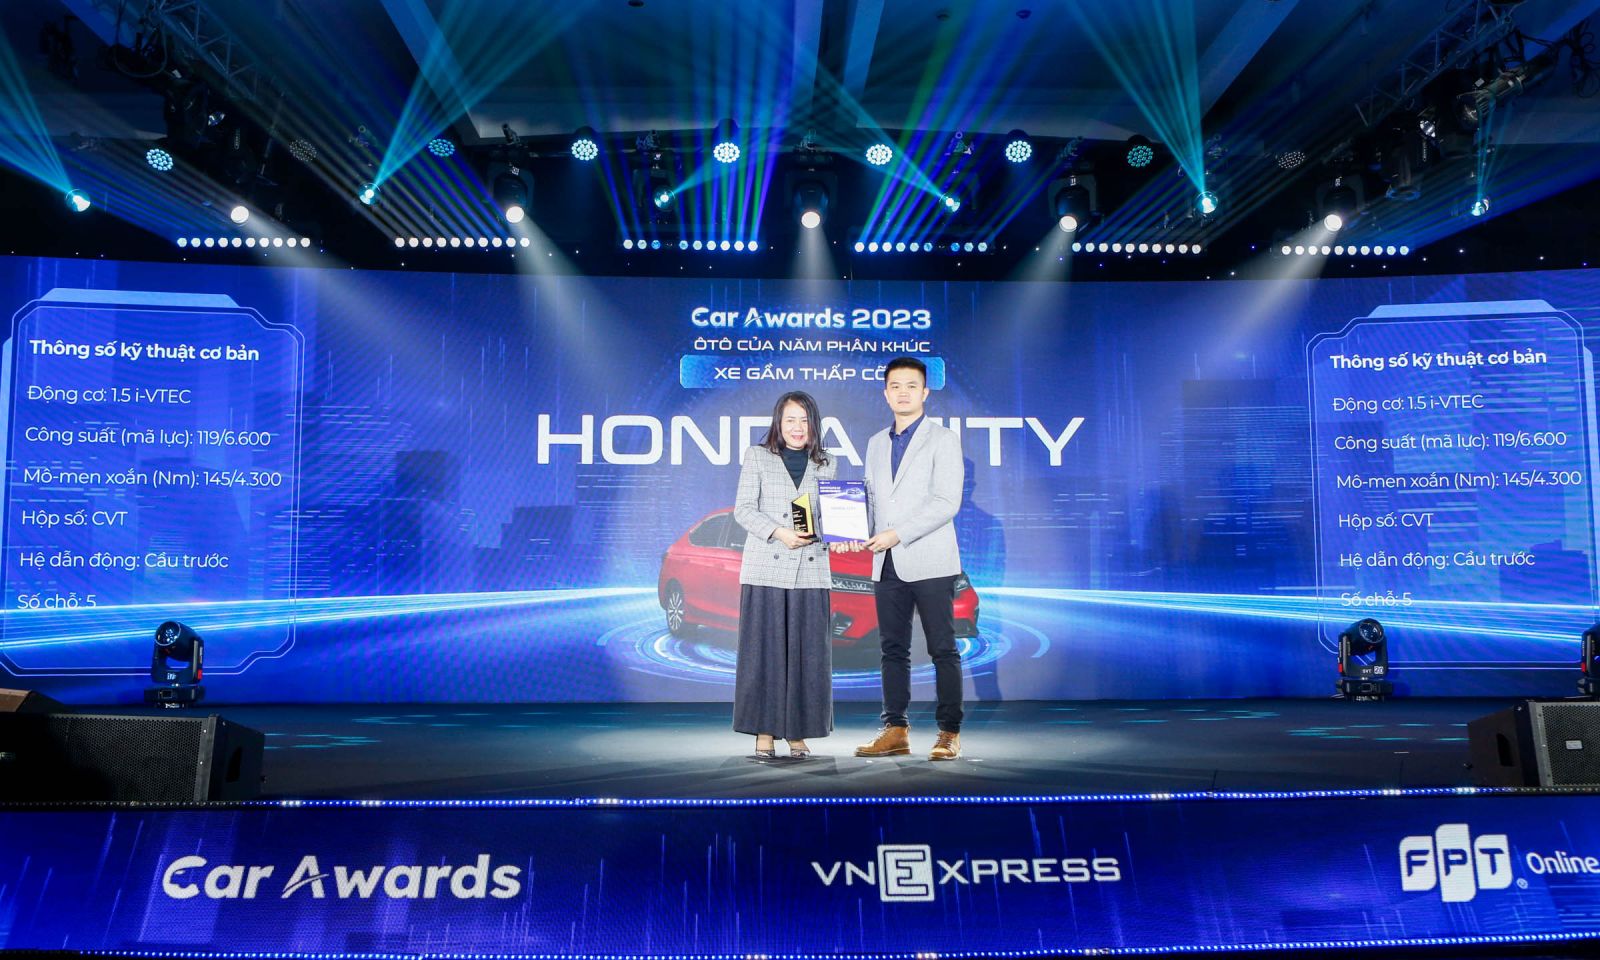 Honda CITY nhận giải "Xe của năm phân khúc sedan cỡ B" tại lễ trao giải "Ôtô của năm" do VnExpress tổ chức